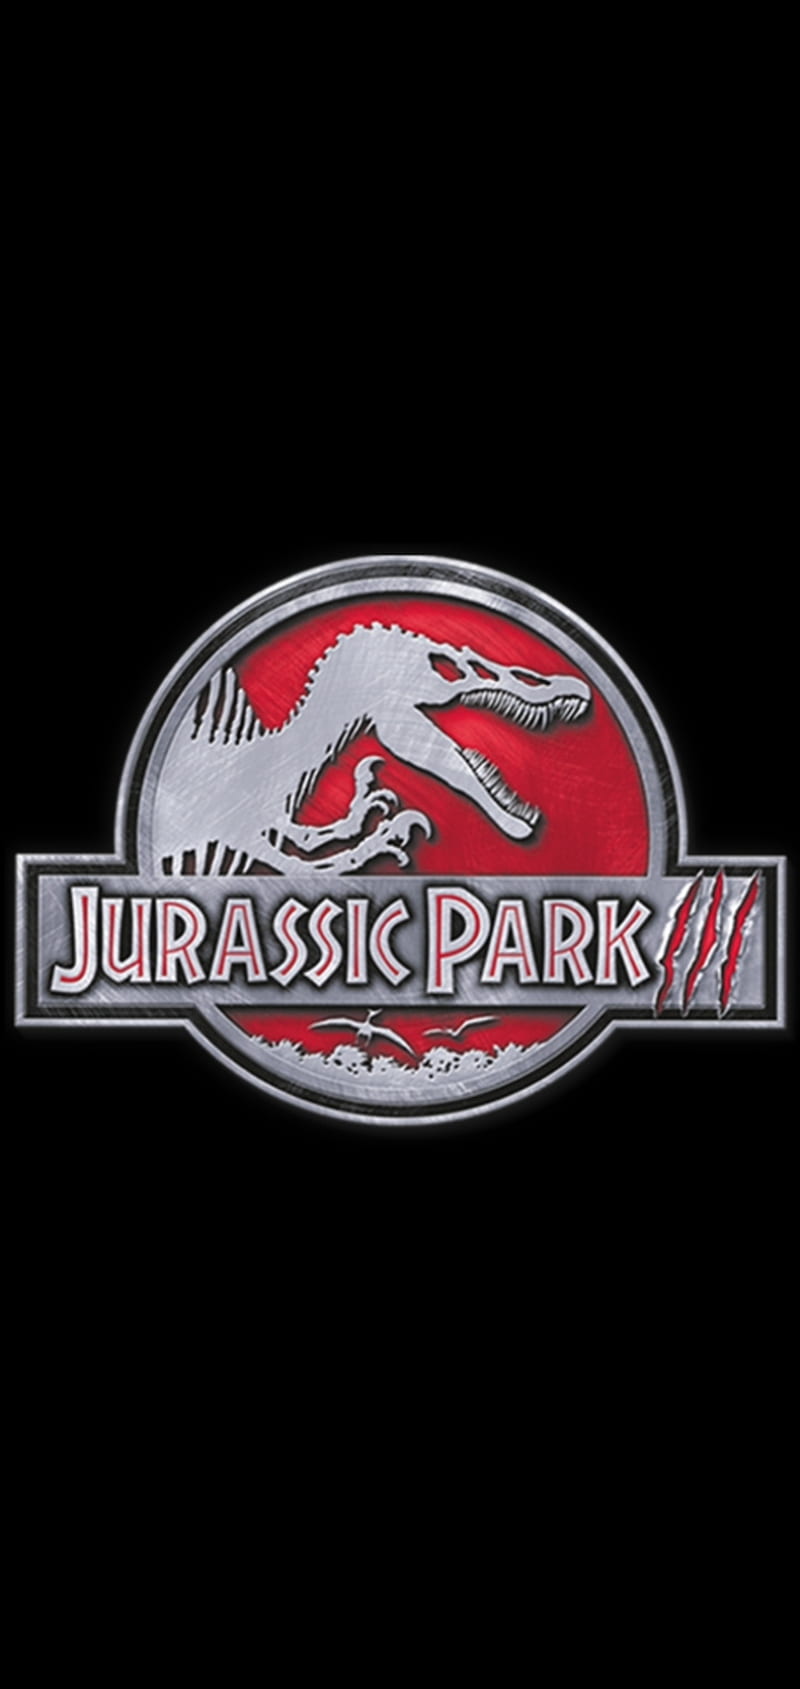 The Park Is Gone Jurassic World Fallen Kingdom 4K Ultra HD Mobile Wallpaper